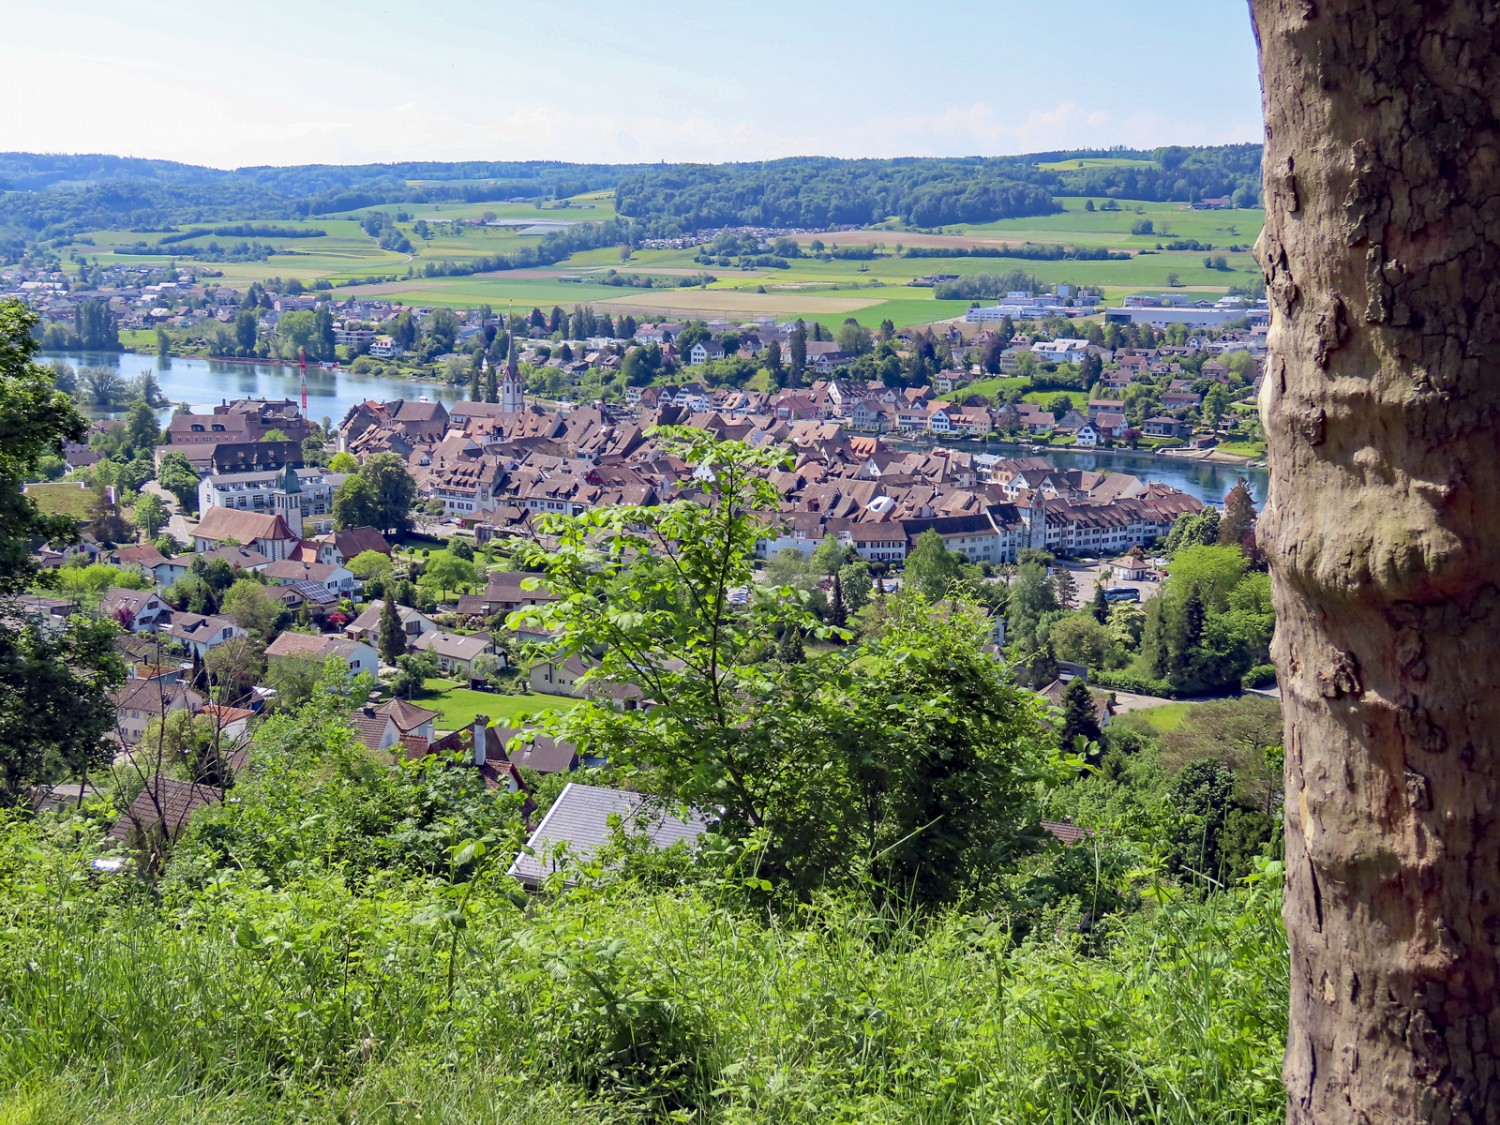 Le bourg de Hohenklingen offre un beau point de vue sur Stein am Rhein. Photo: Heinz Trachsel